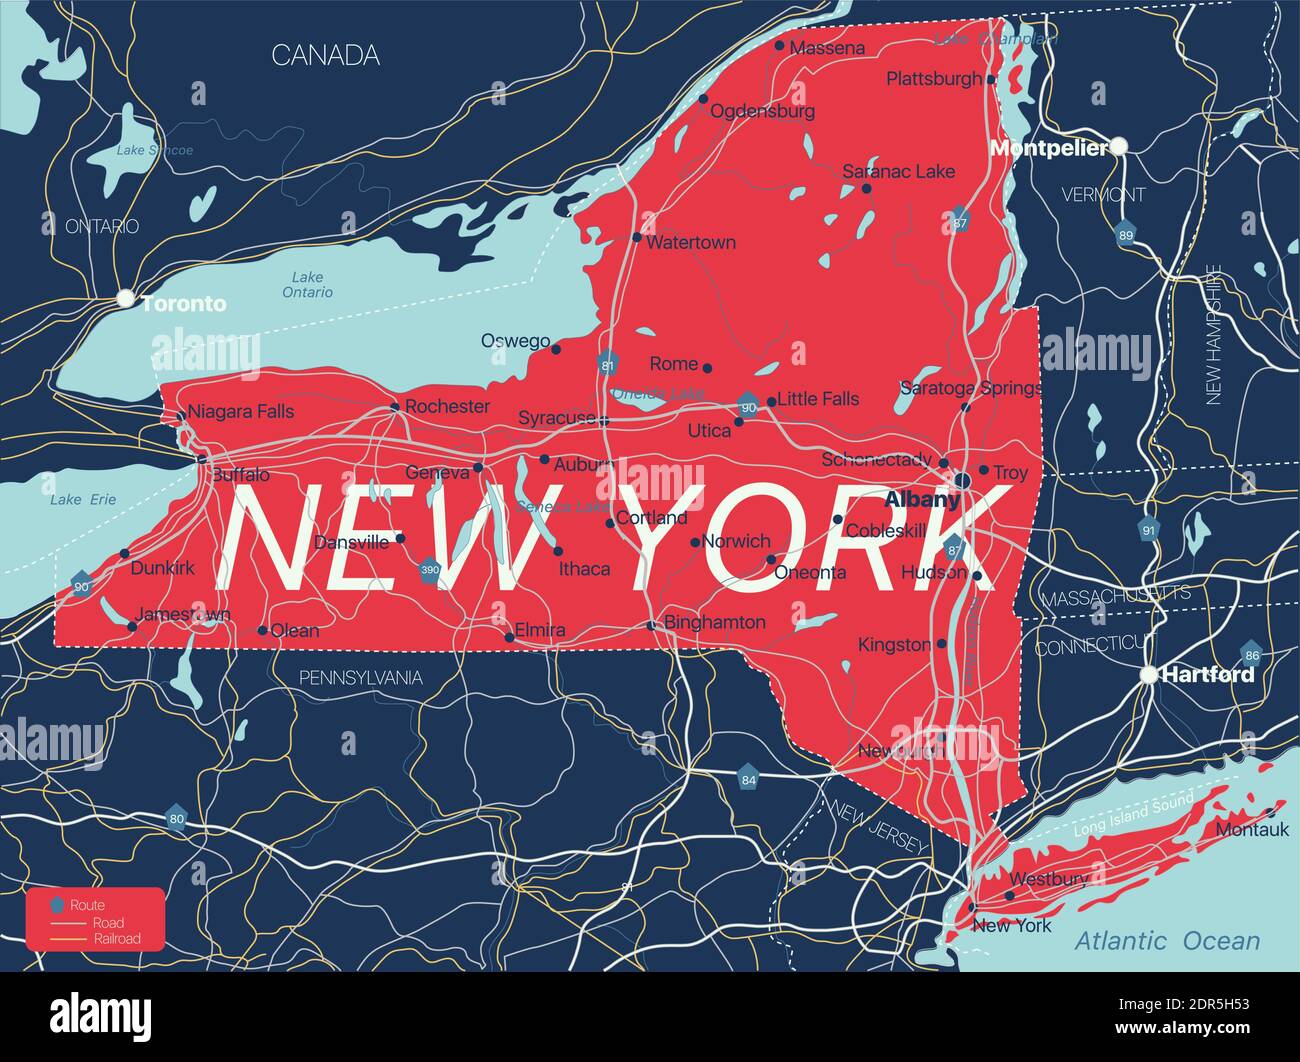 Stato di New York Mappa dettagliata modificabile con città e città, siti geografici, strade, ferrovie, interstatali e autostrade degli Stati Uniti. File vettoriale EPS-10, tren Illustrazione Vettoriale